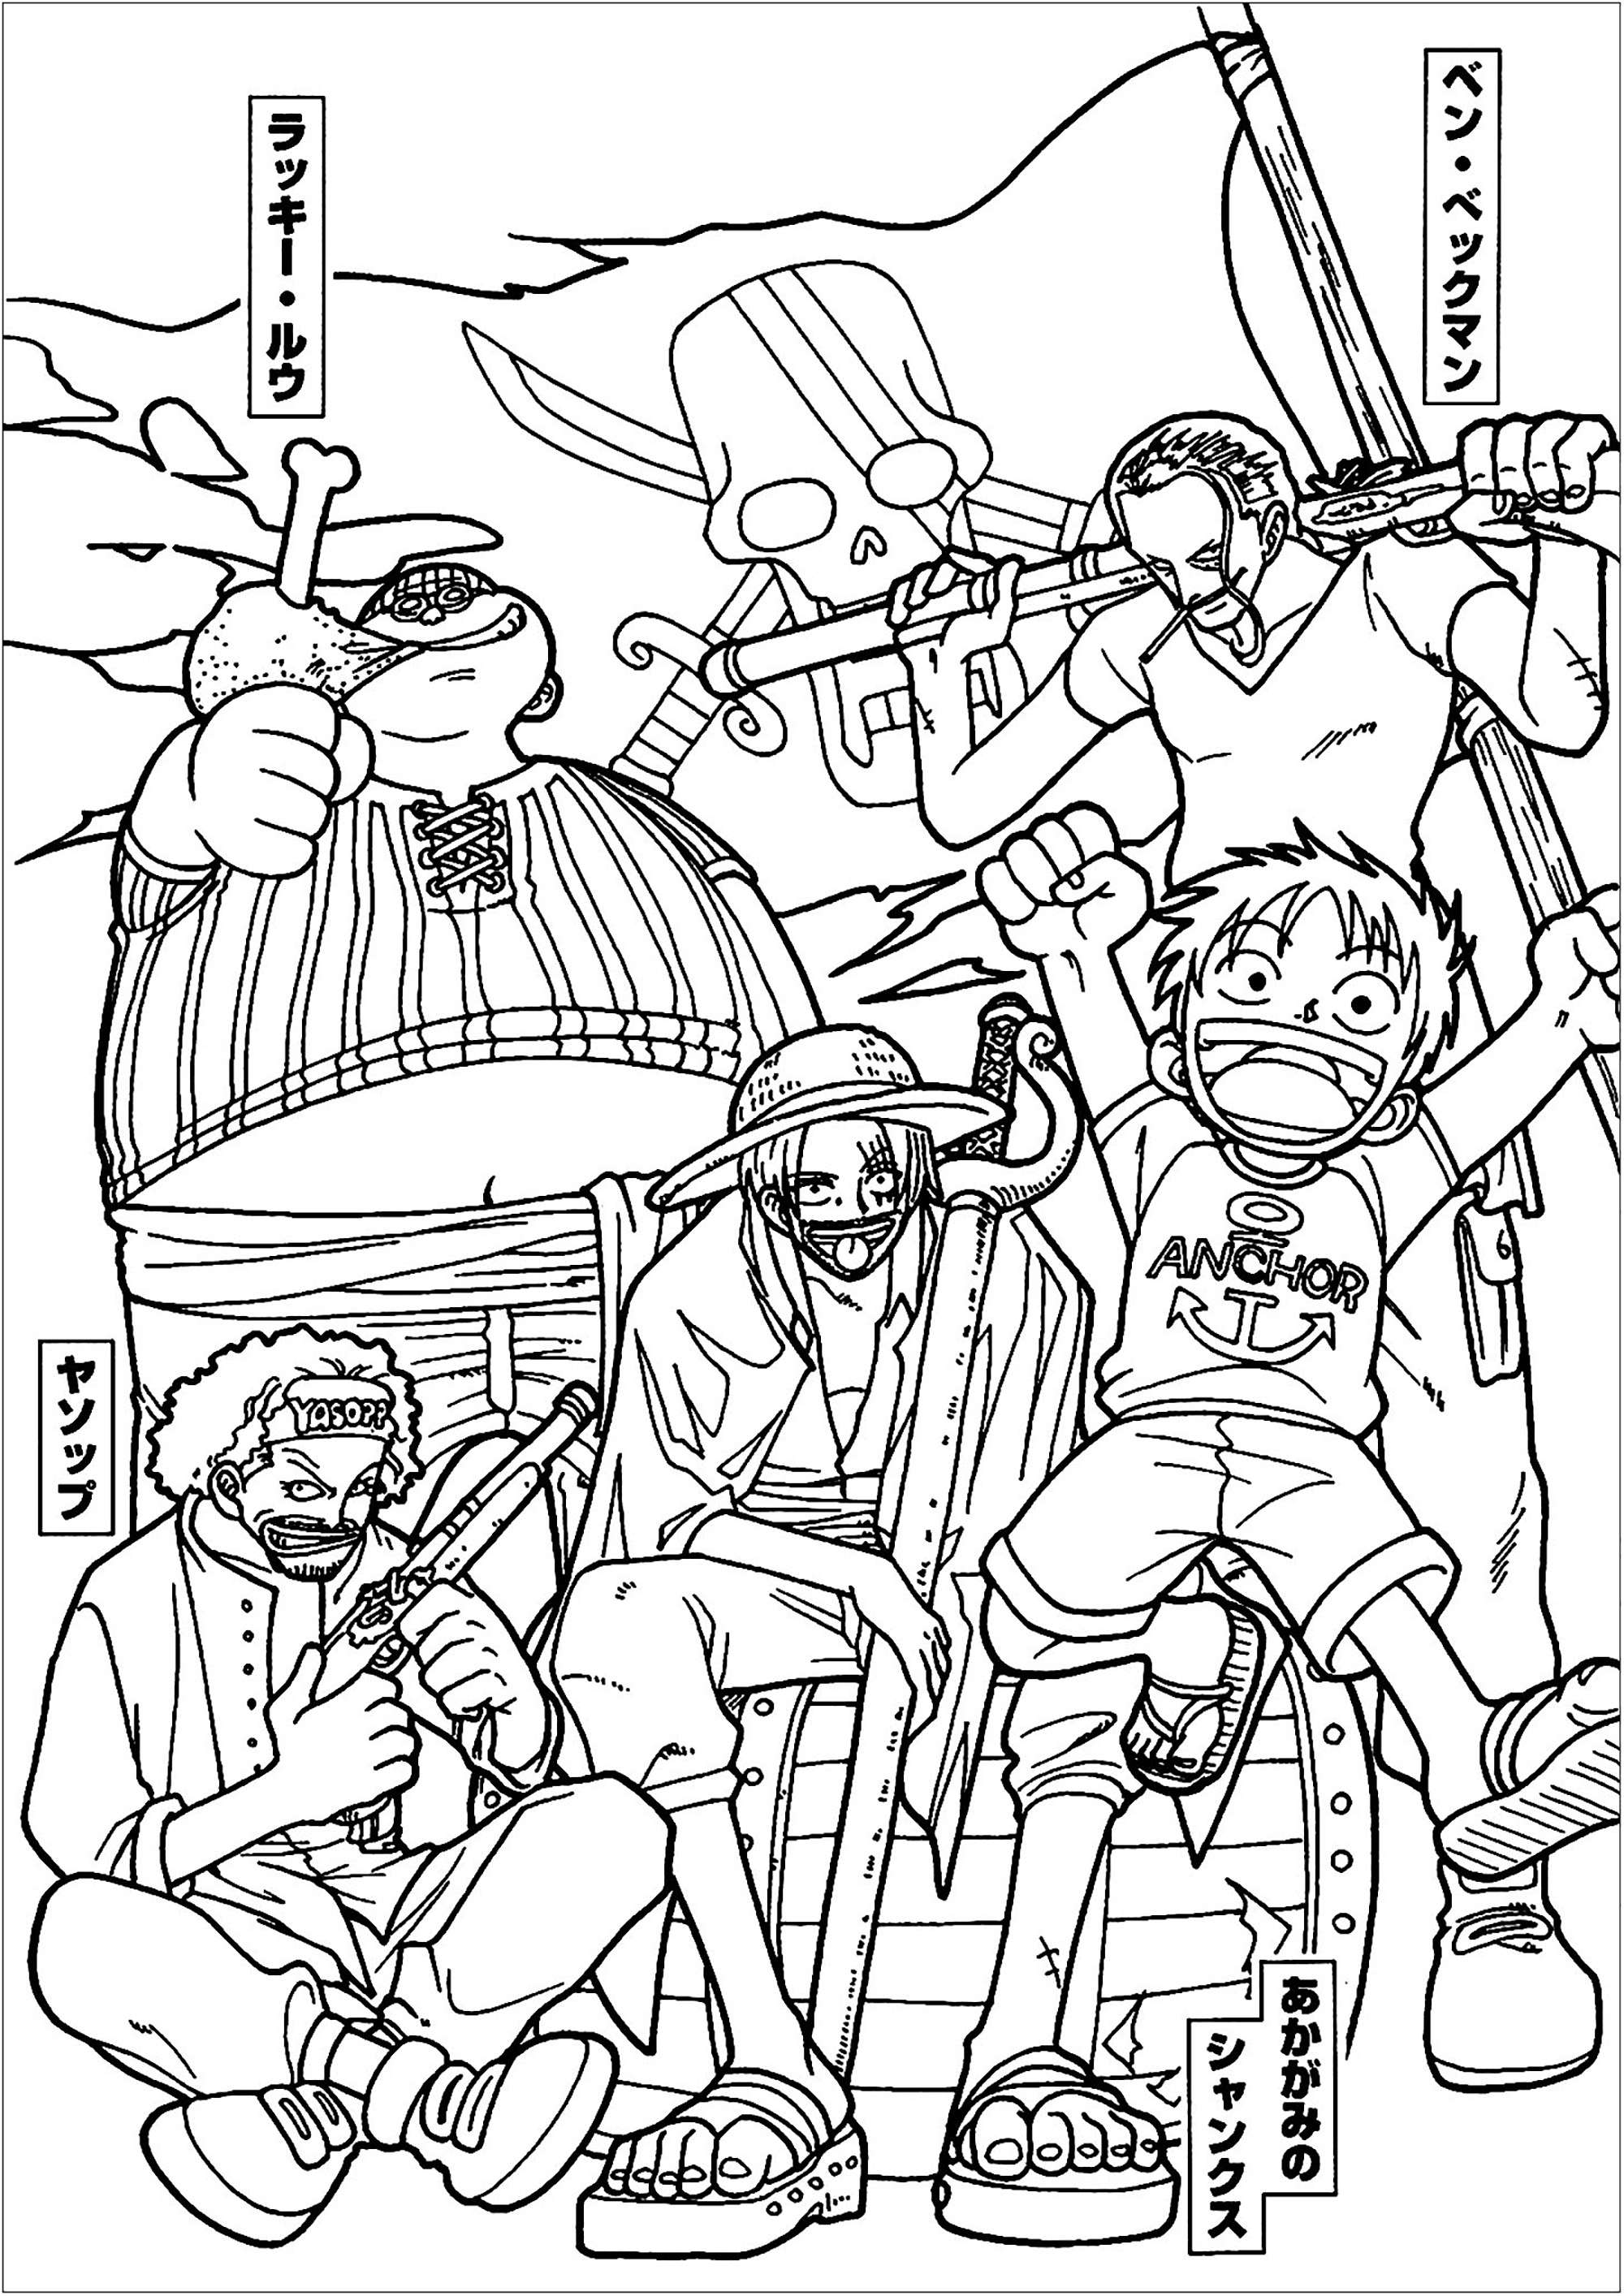 Colorir com personagens de One piece. 'One Piece' é uma manga e anime criada por Eiichiro Oda em 1997. Foi adaptada para uma série de ação ao vivo pela Netflix em 2023.